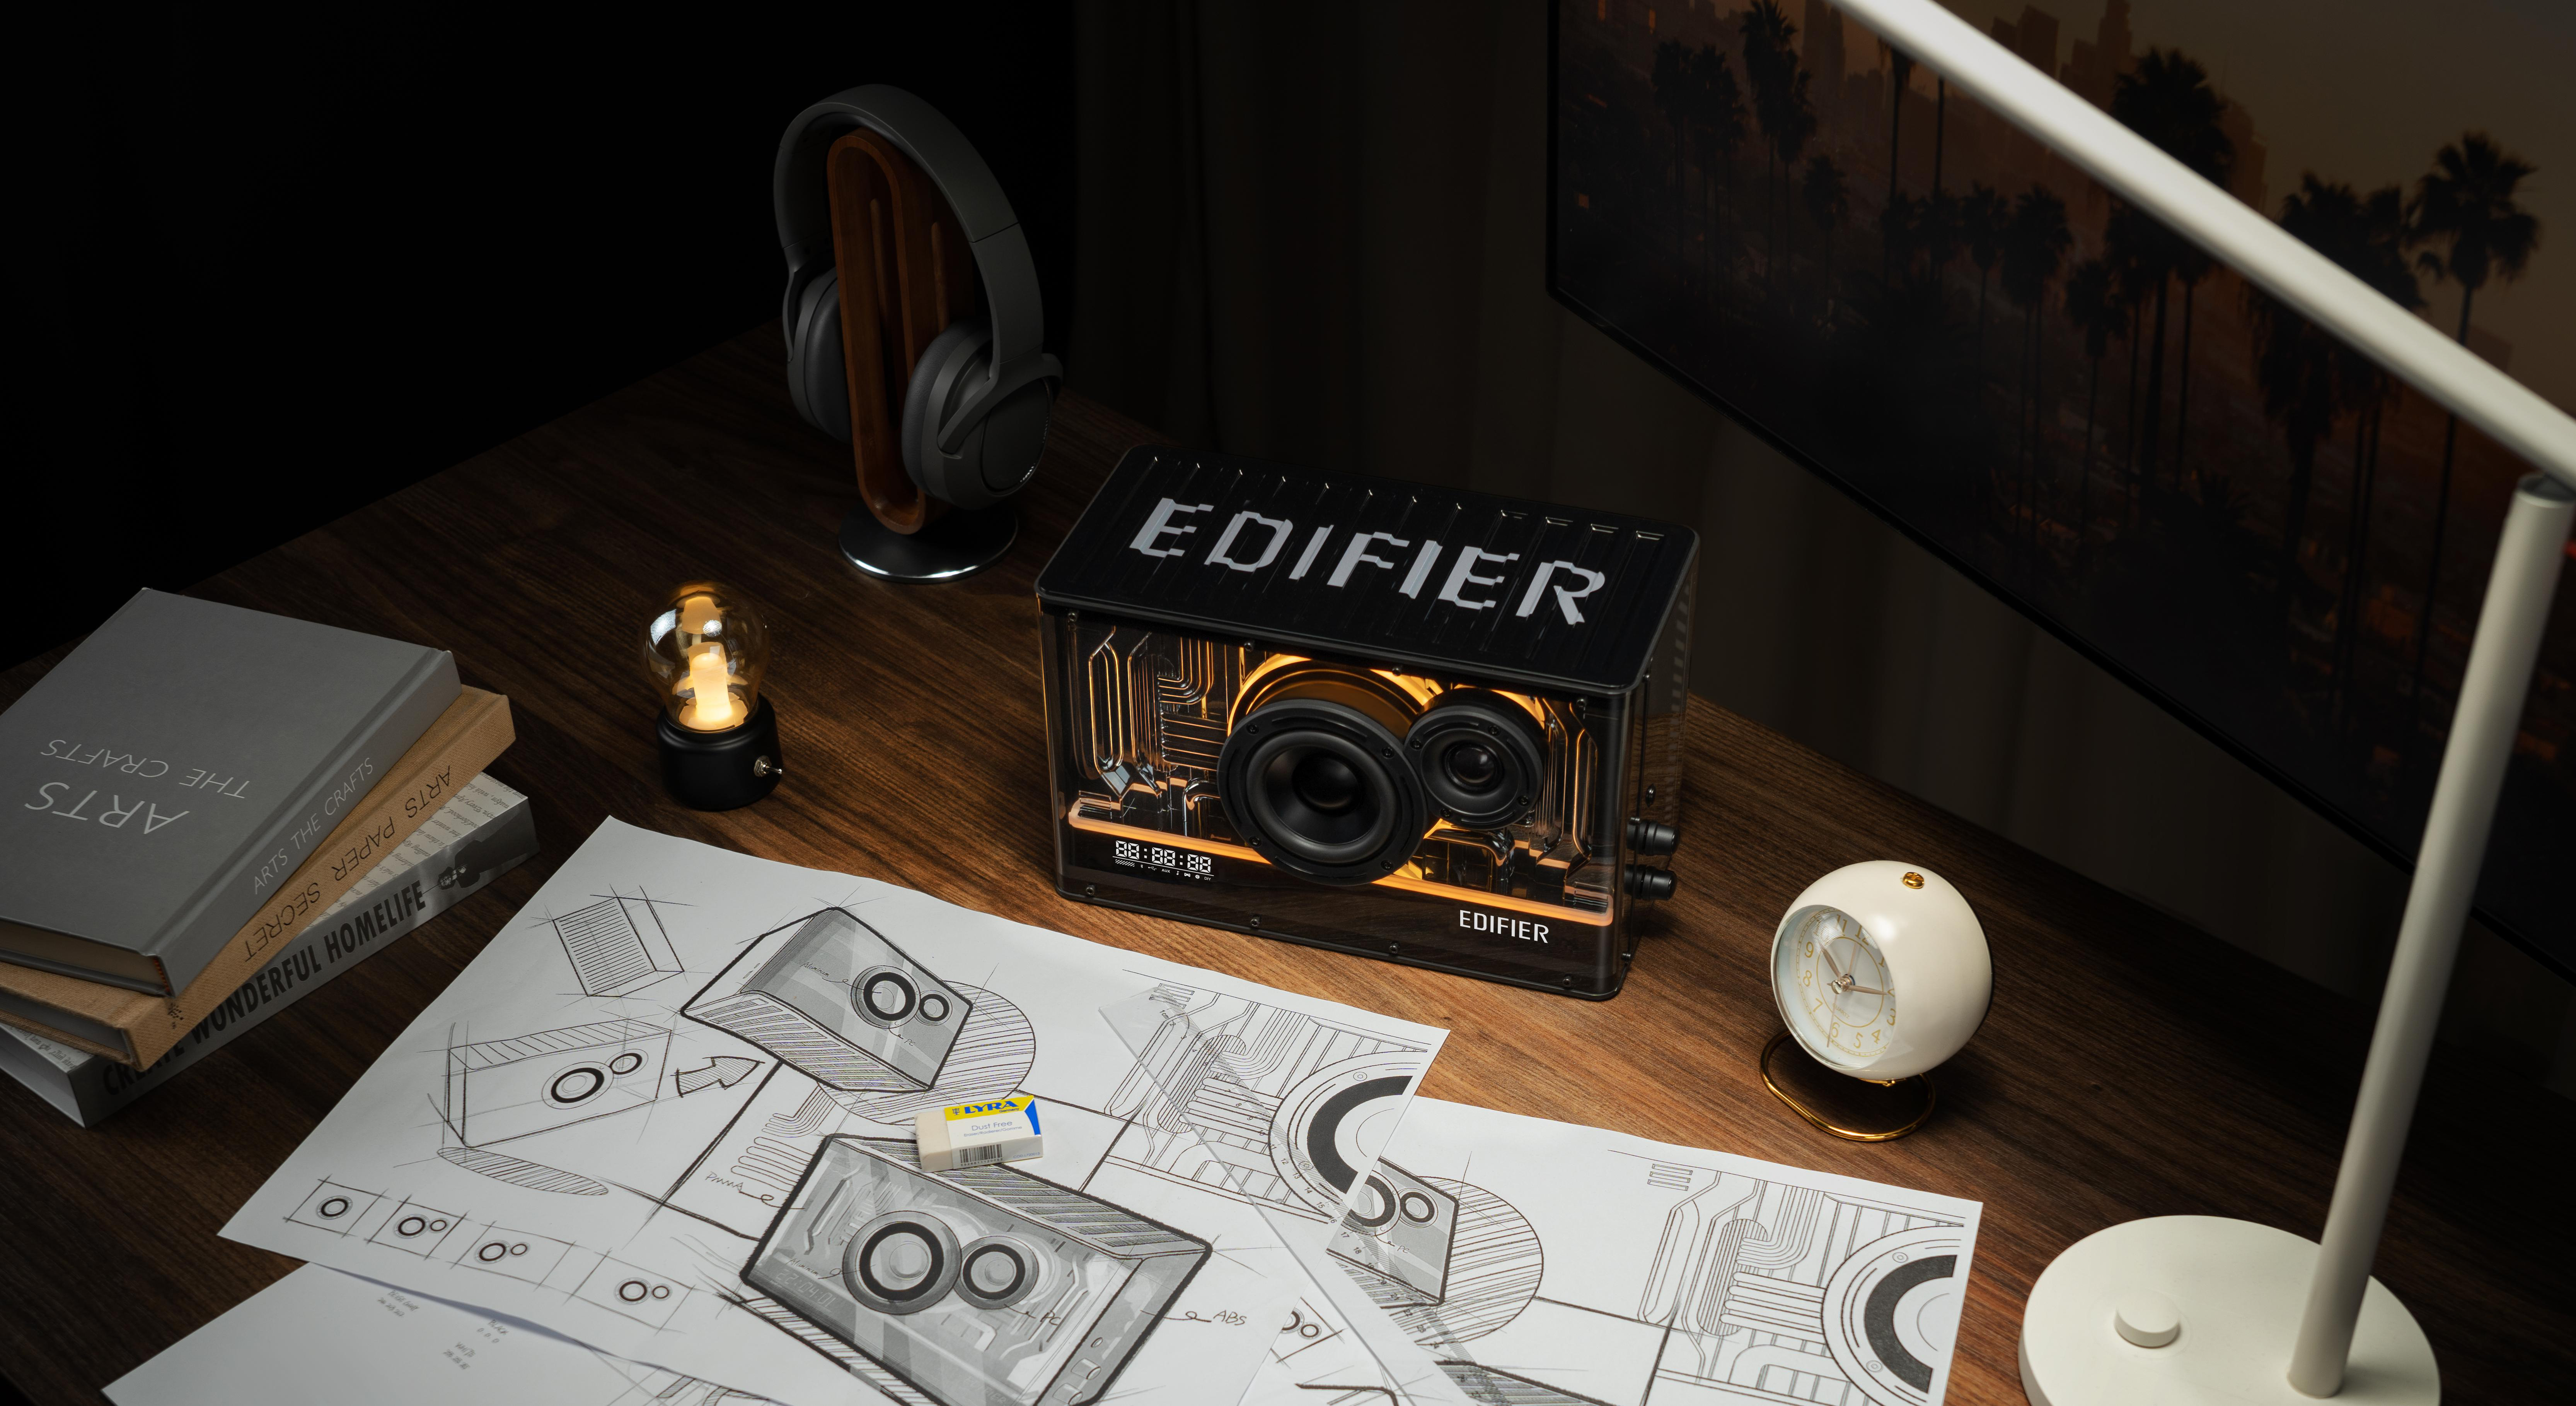 EDIFIER QD35 kompakter Lautsprecher